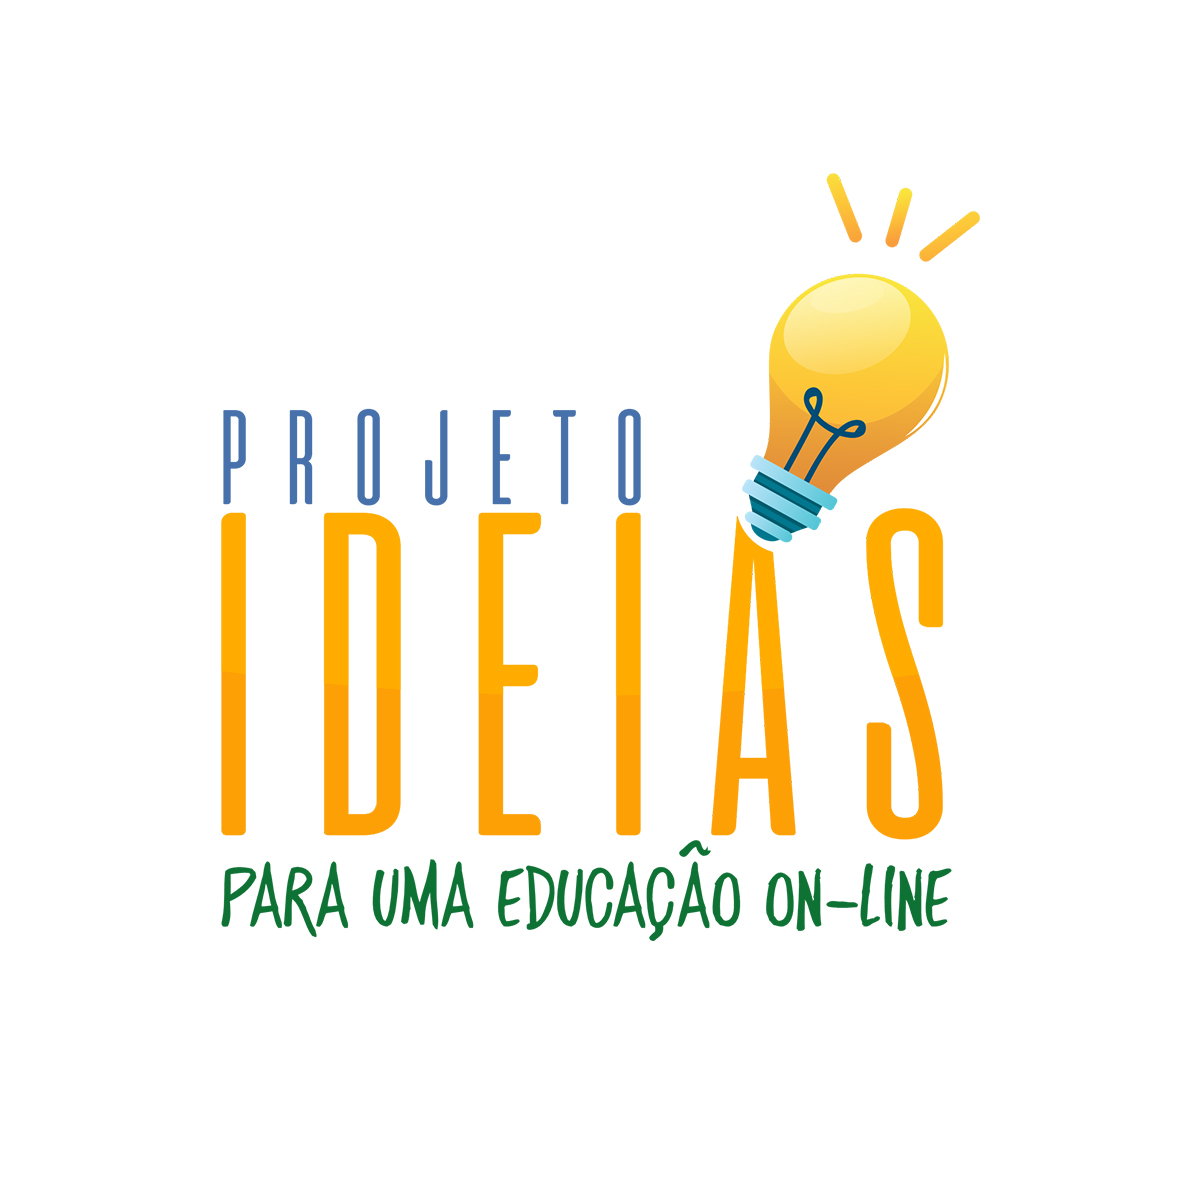 Em duas semanas, projeto Ideias alcança pessoas de 20 estados brasileiros